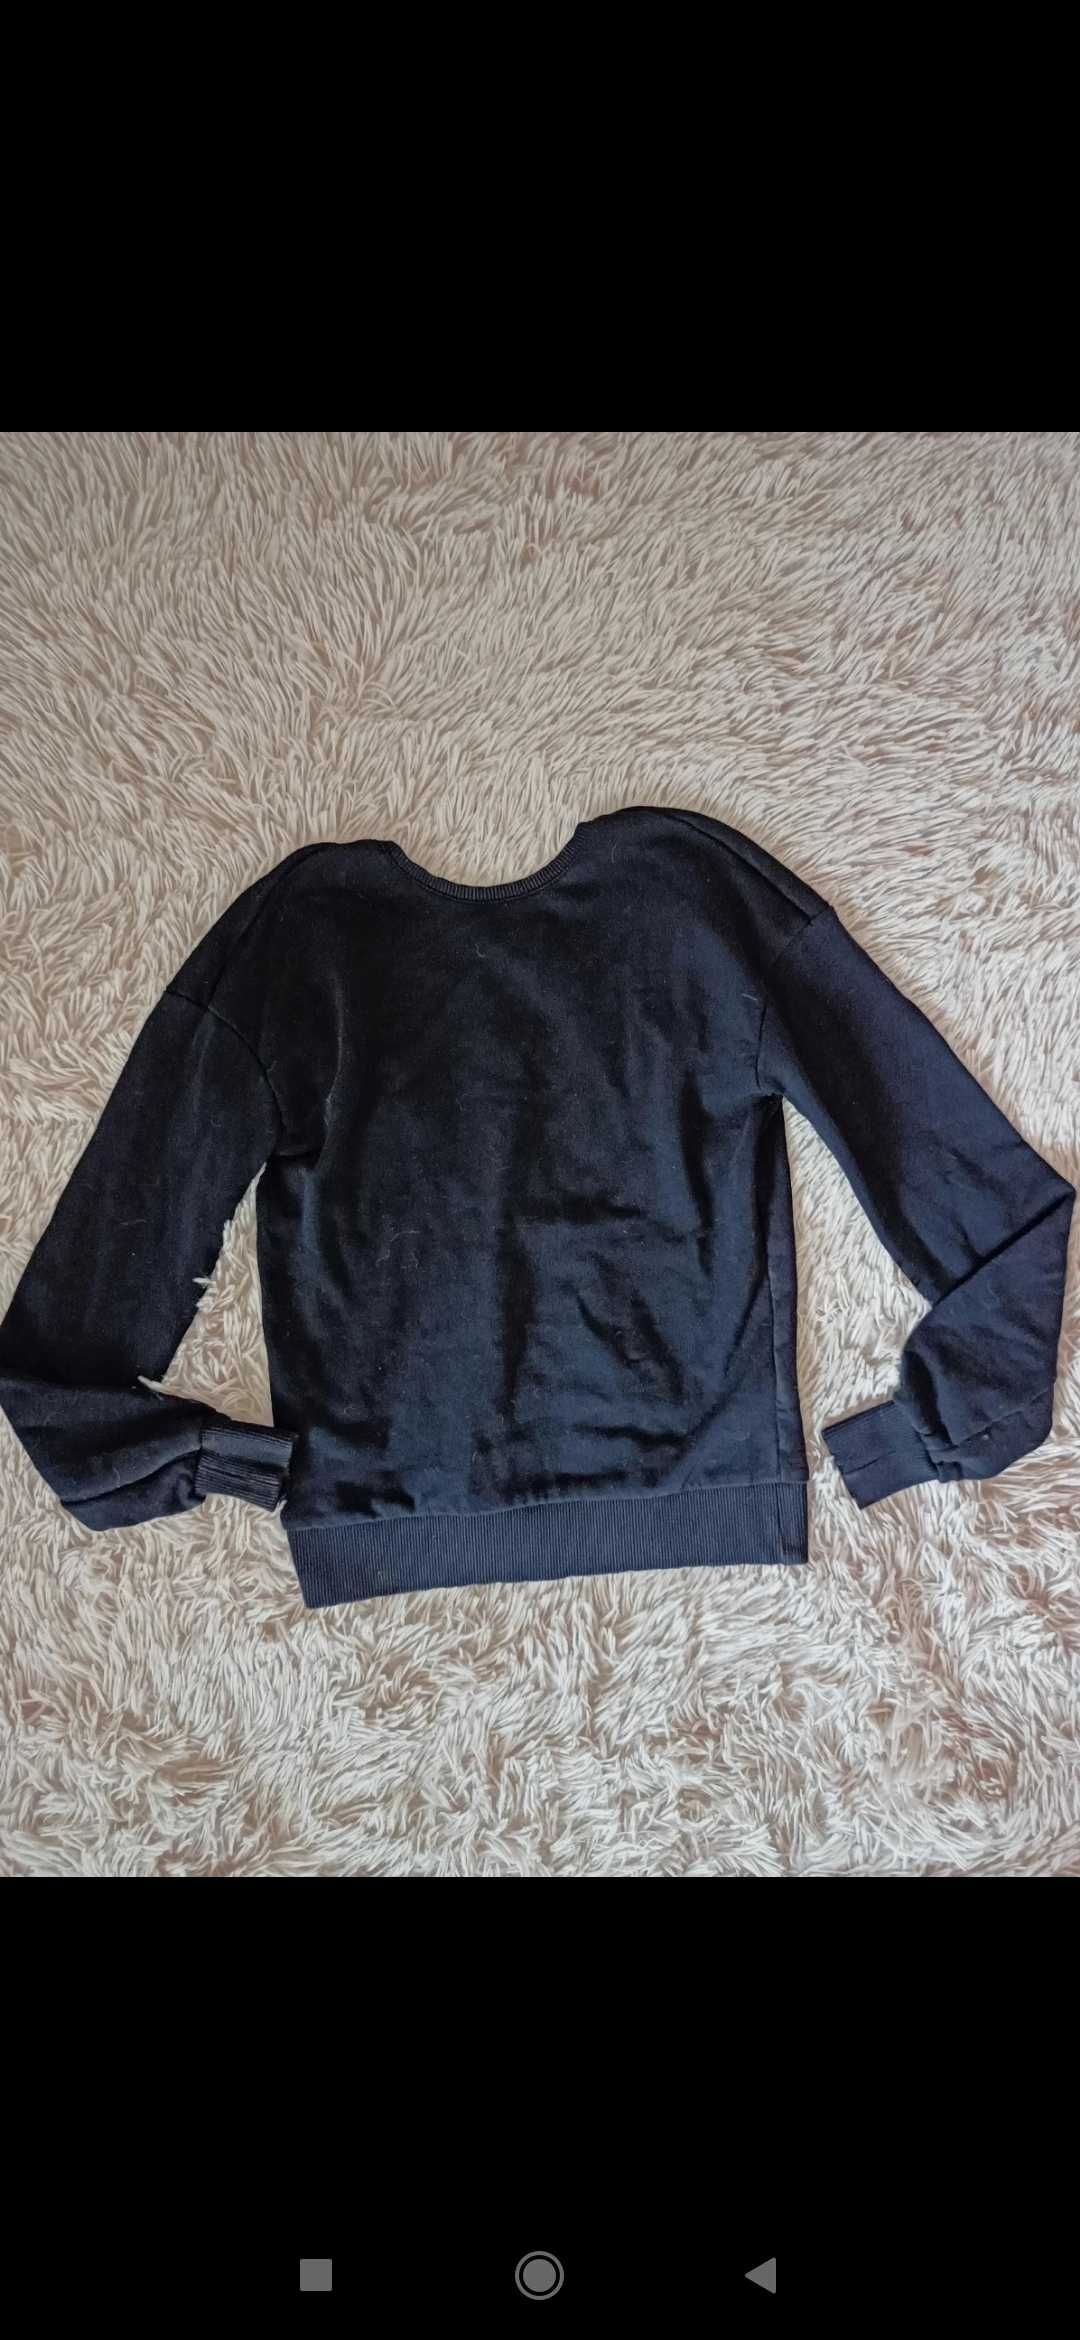 Bluza czarna Na-Kd bawełniana z wycięciem 32/34 XS klasyczna damska